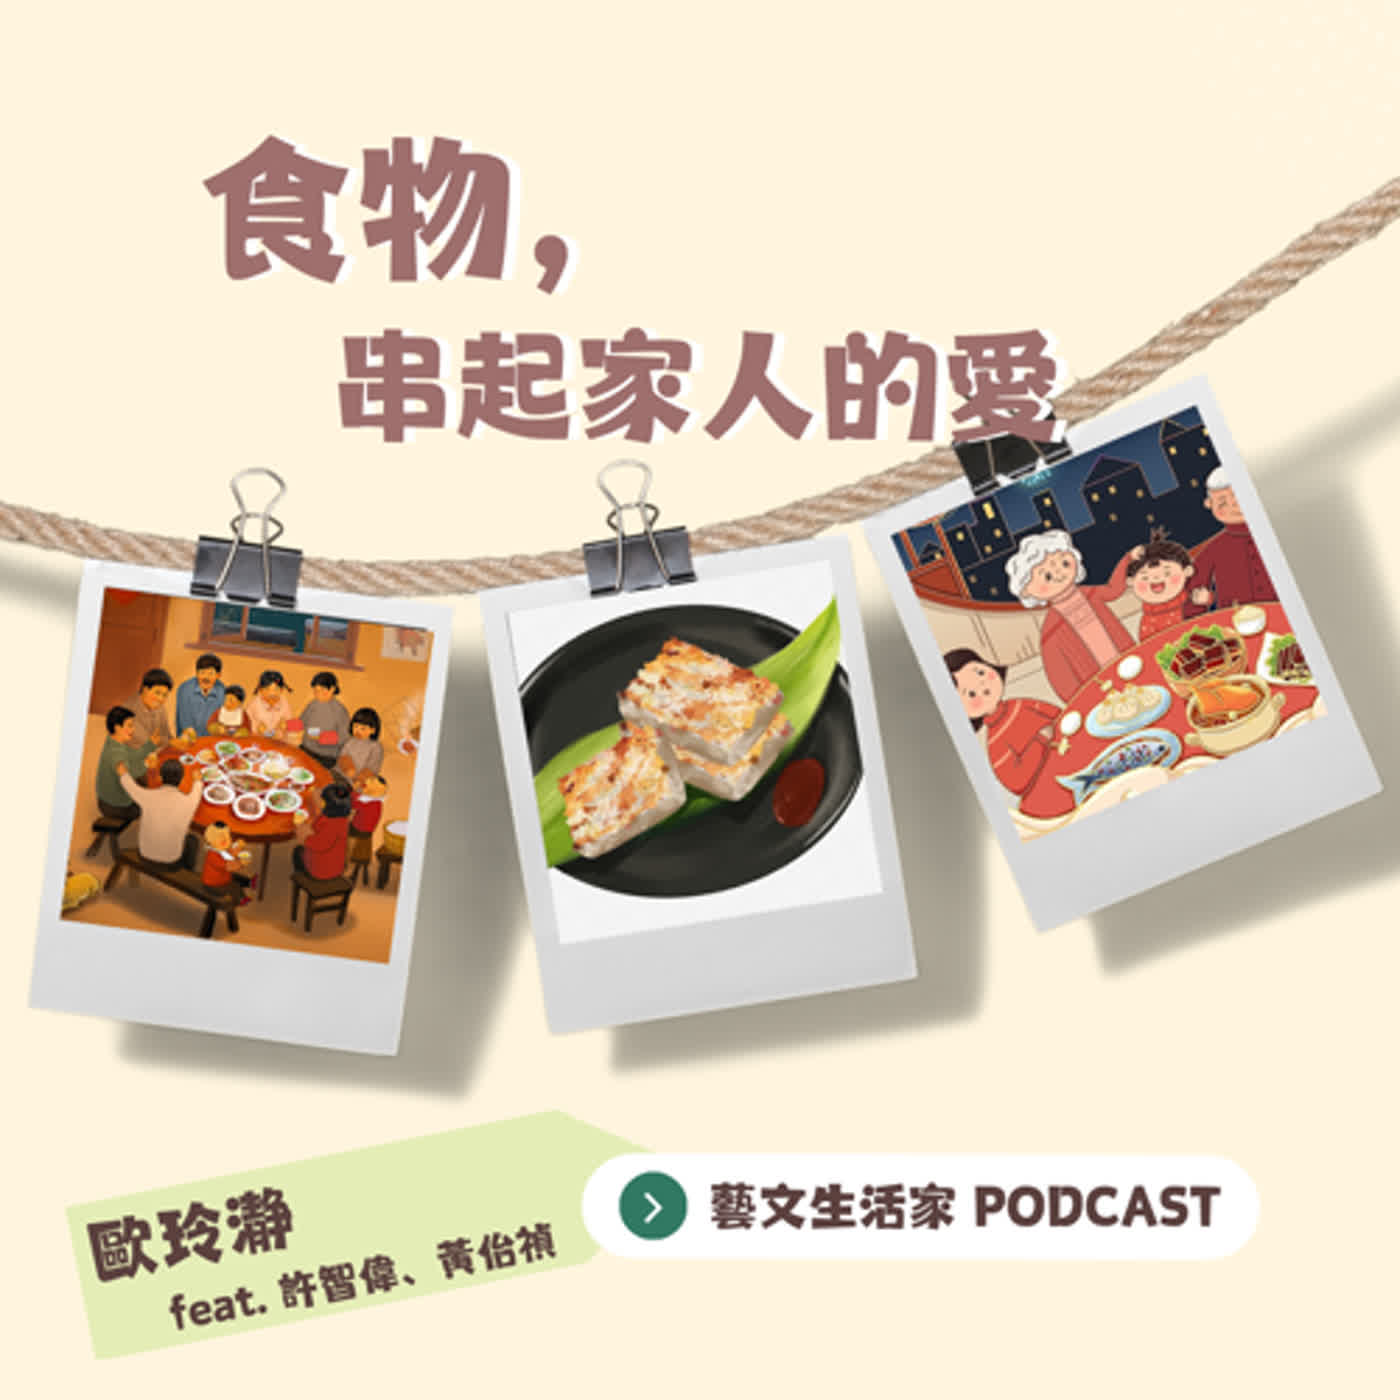 EP.119 食物，串起家人的愛。邀訪繪本作家許智偉David Hsu老師與青林國際出版社黃佁禎主編